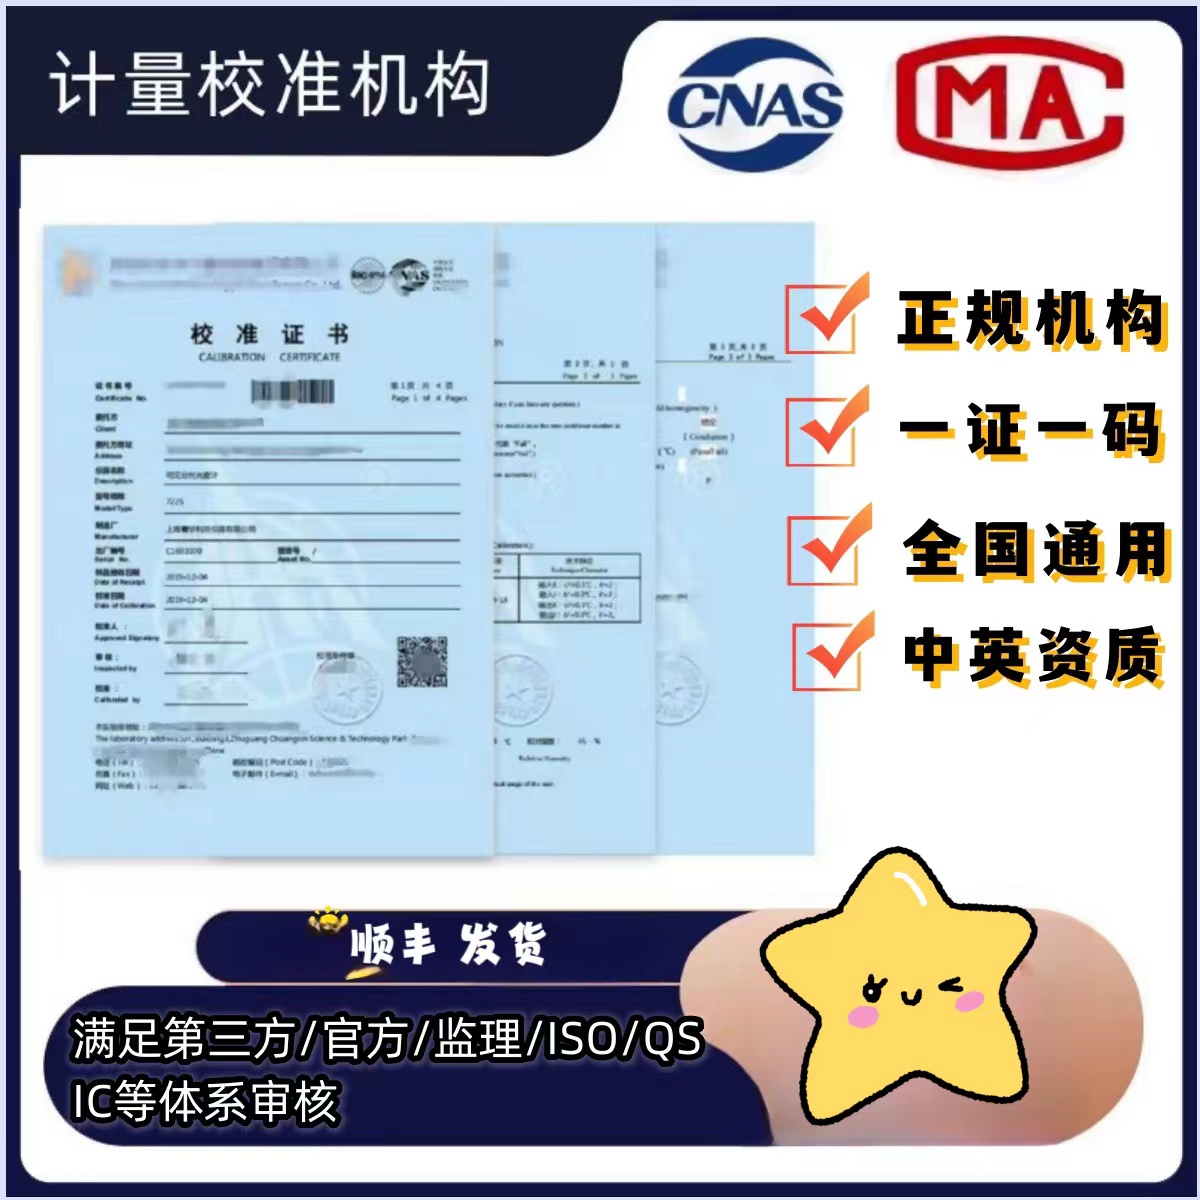 官方可查仪器仪表第三方计量校准报告检定报告CNAS证书